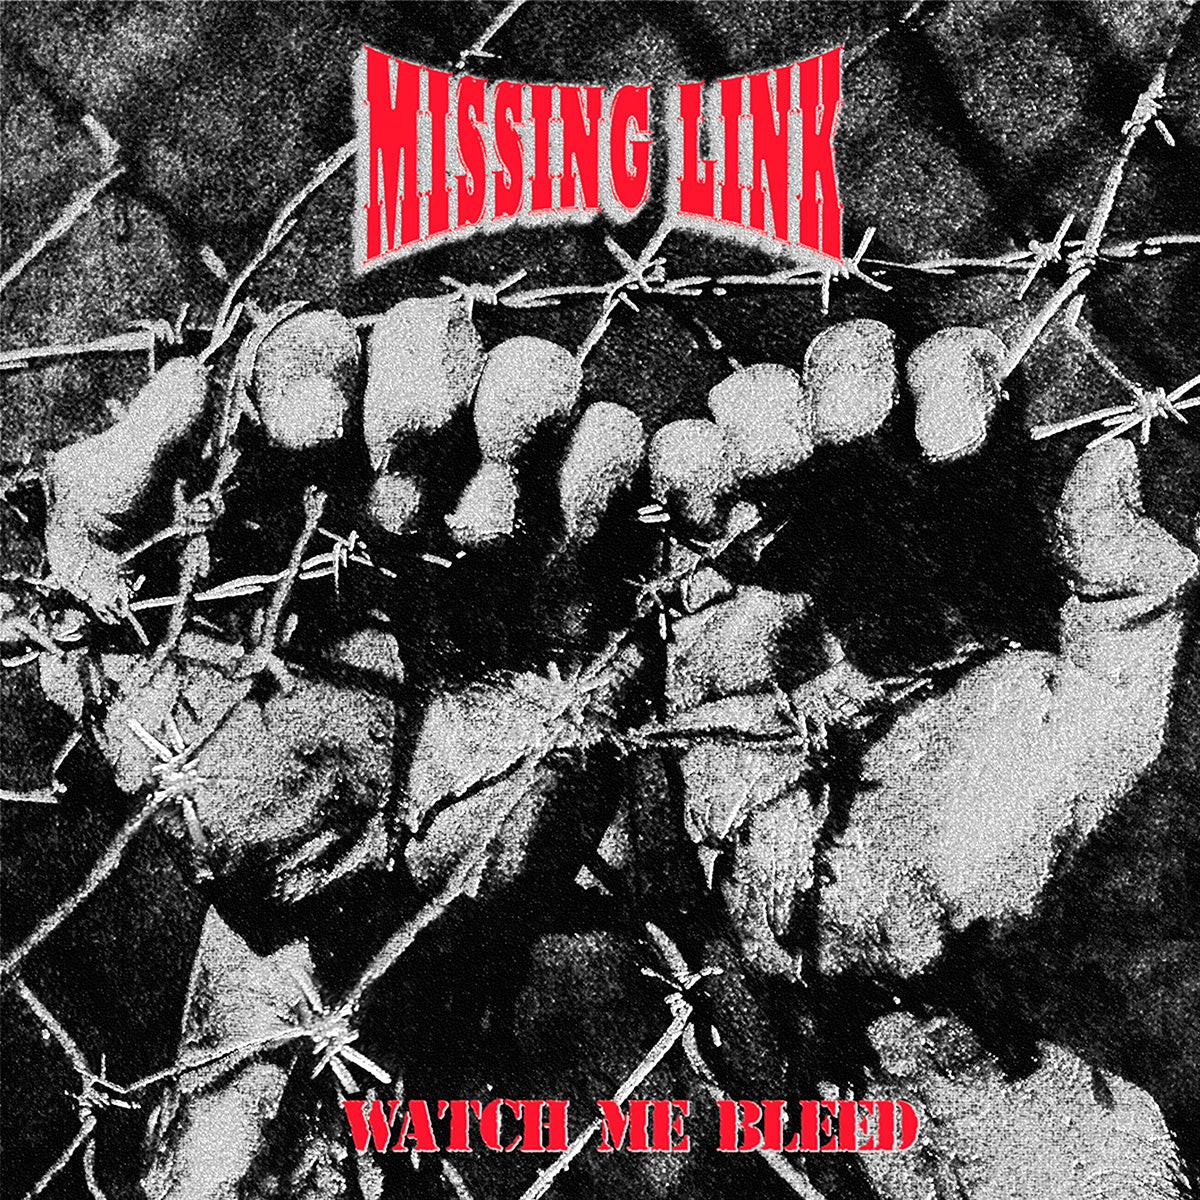 MISSING LINK "Watch Me Bleed" LP